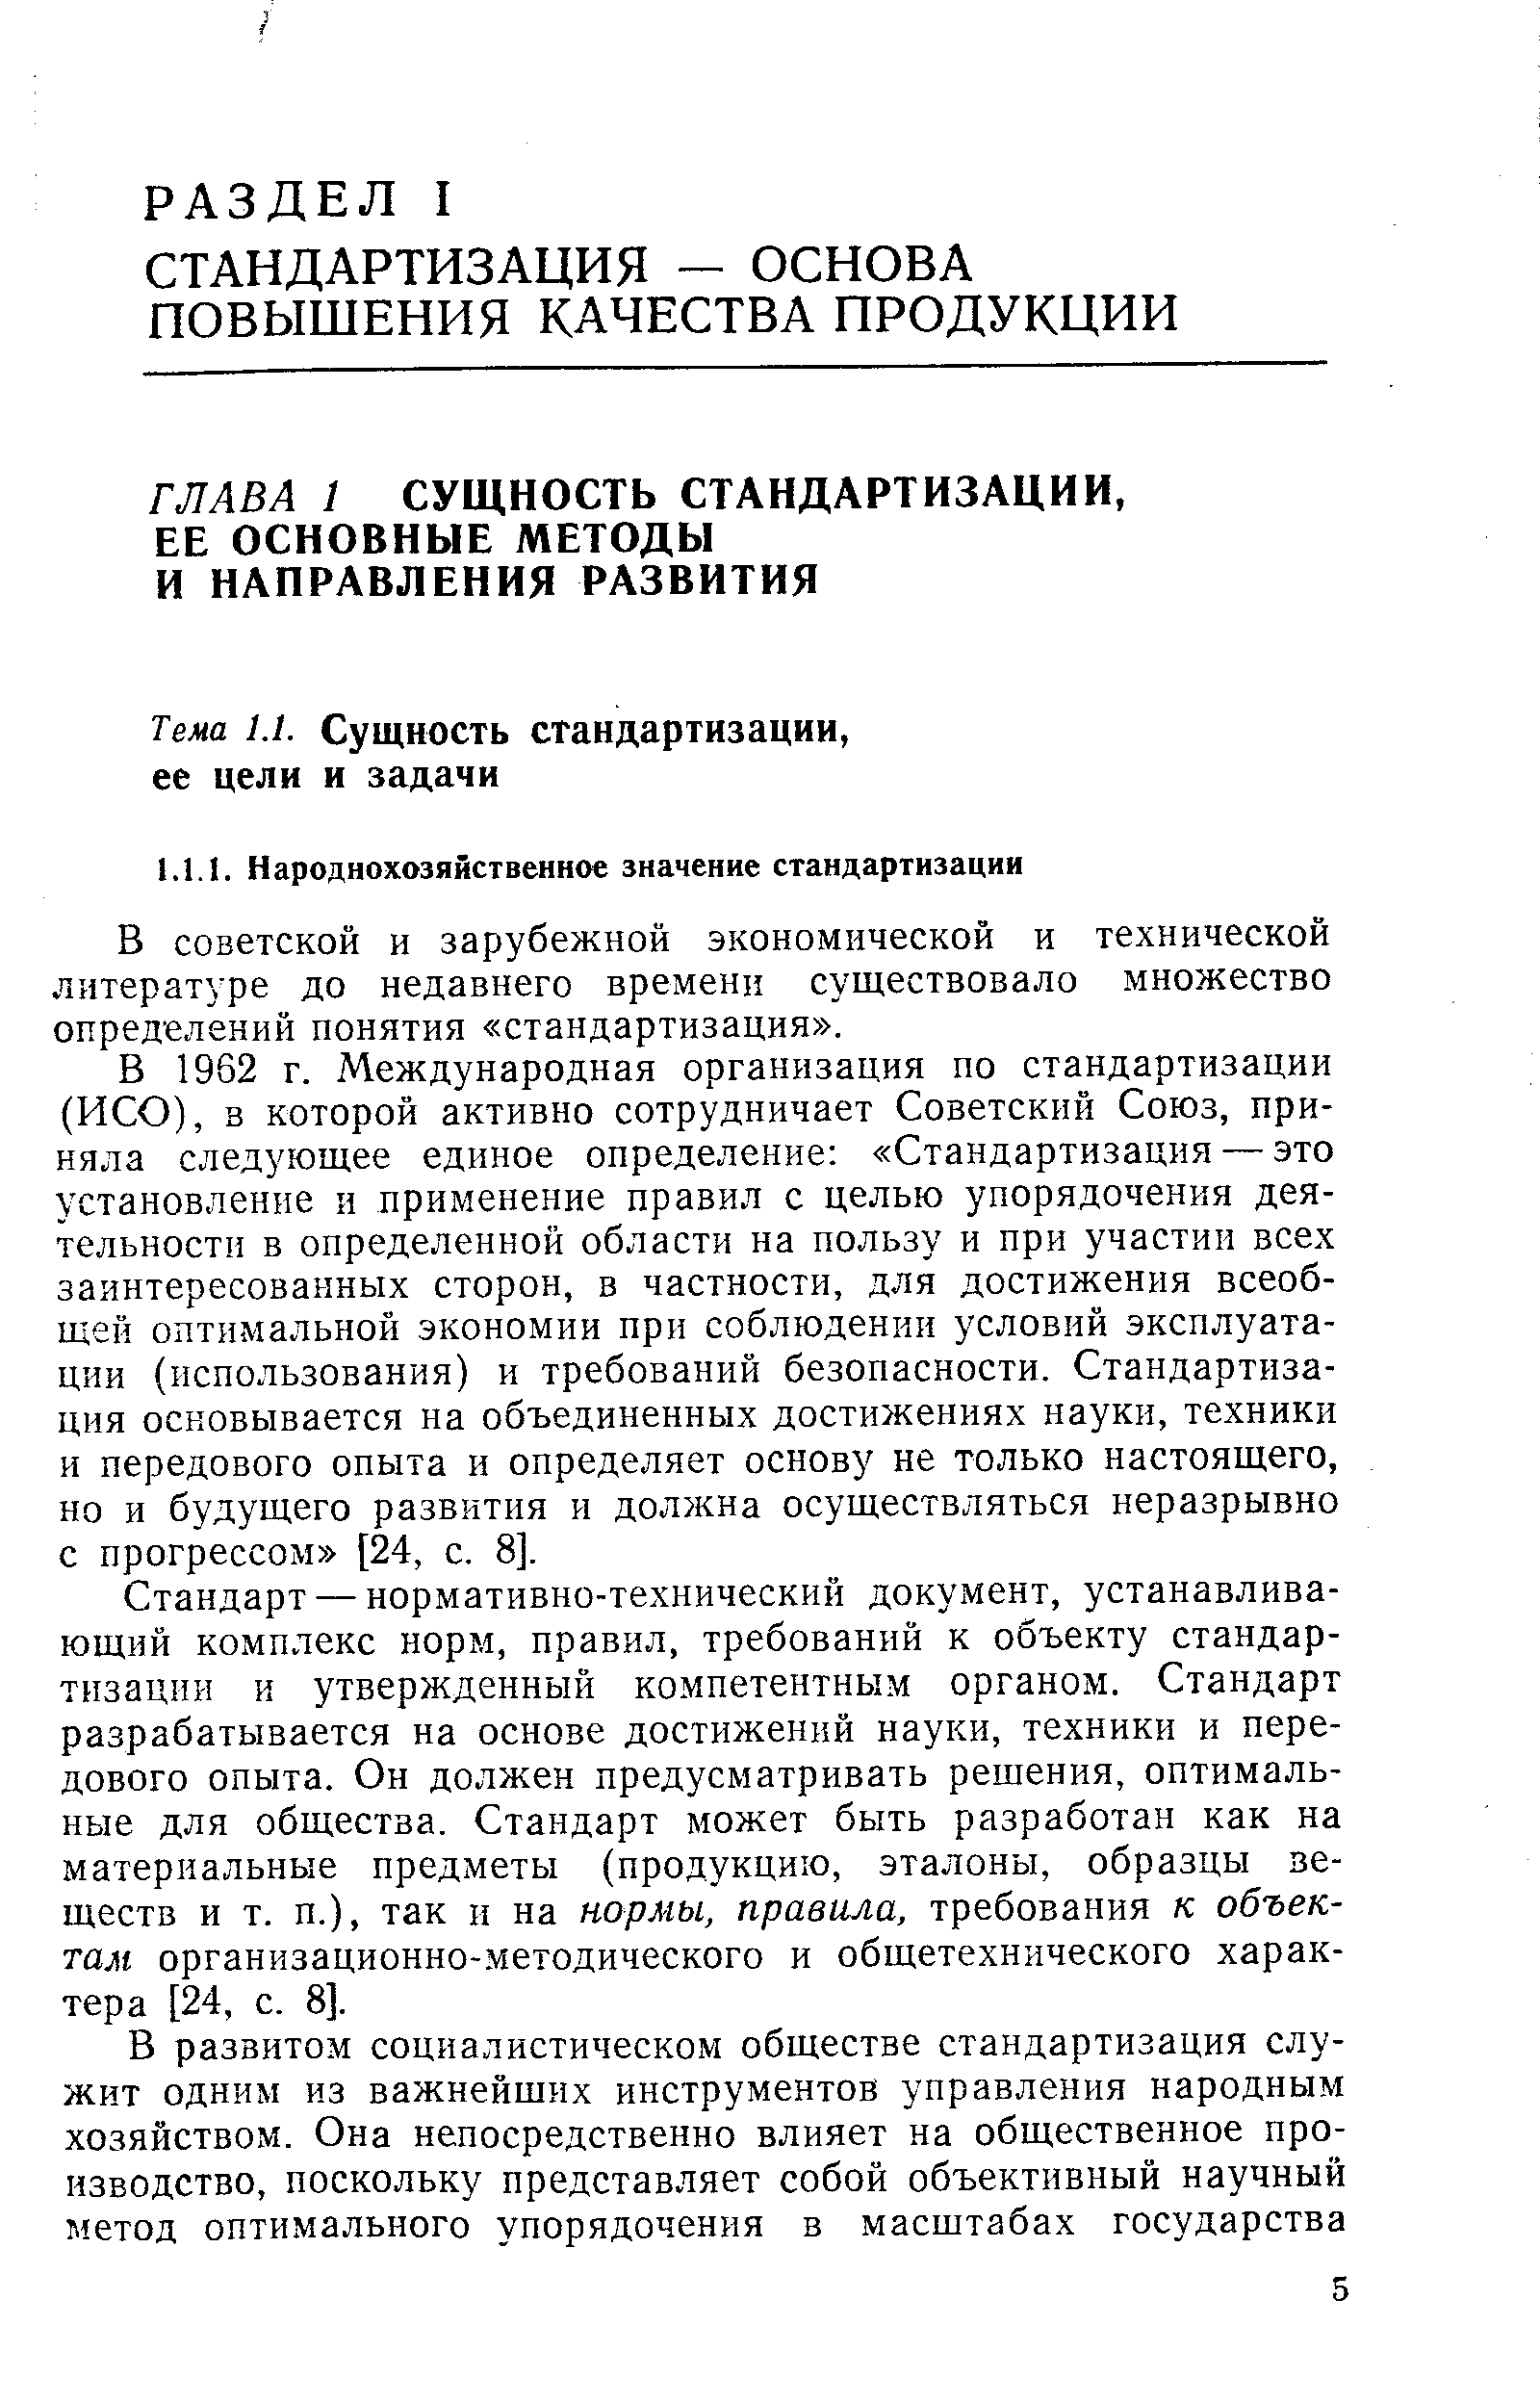 В советской и зарубежной экономической и технической литературе до недавнего времени существовало множество определений понятия стандартизация .
